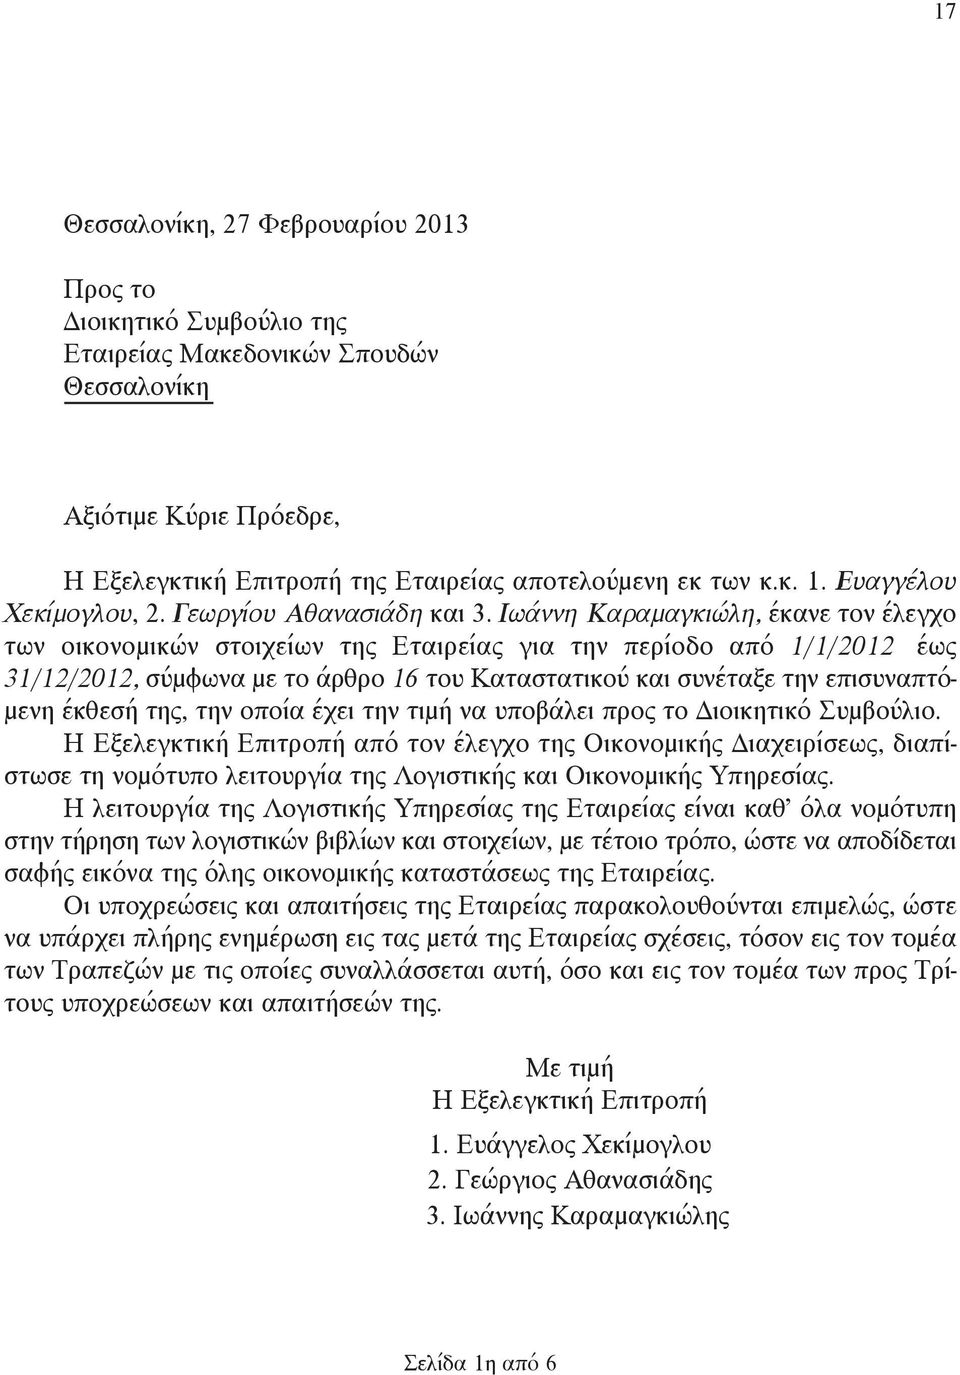 Ιωάννη Καραμαγκιώλη, έκανε τον έλεγχο των οικονομικών στοιχείων της Εταιρείας για την περίοδο από 1/1/2012 έως 31/12/2012, σύμφωνα με το άρθρο 16 του Καταστατικού και συνέταξε την επισυναπτόμενη